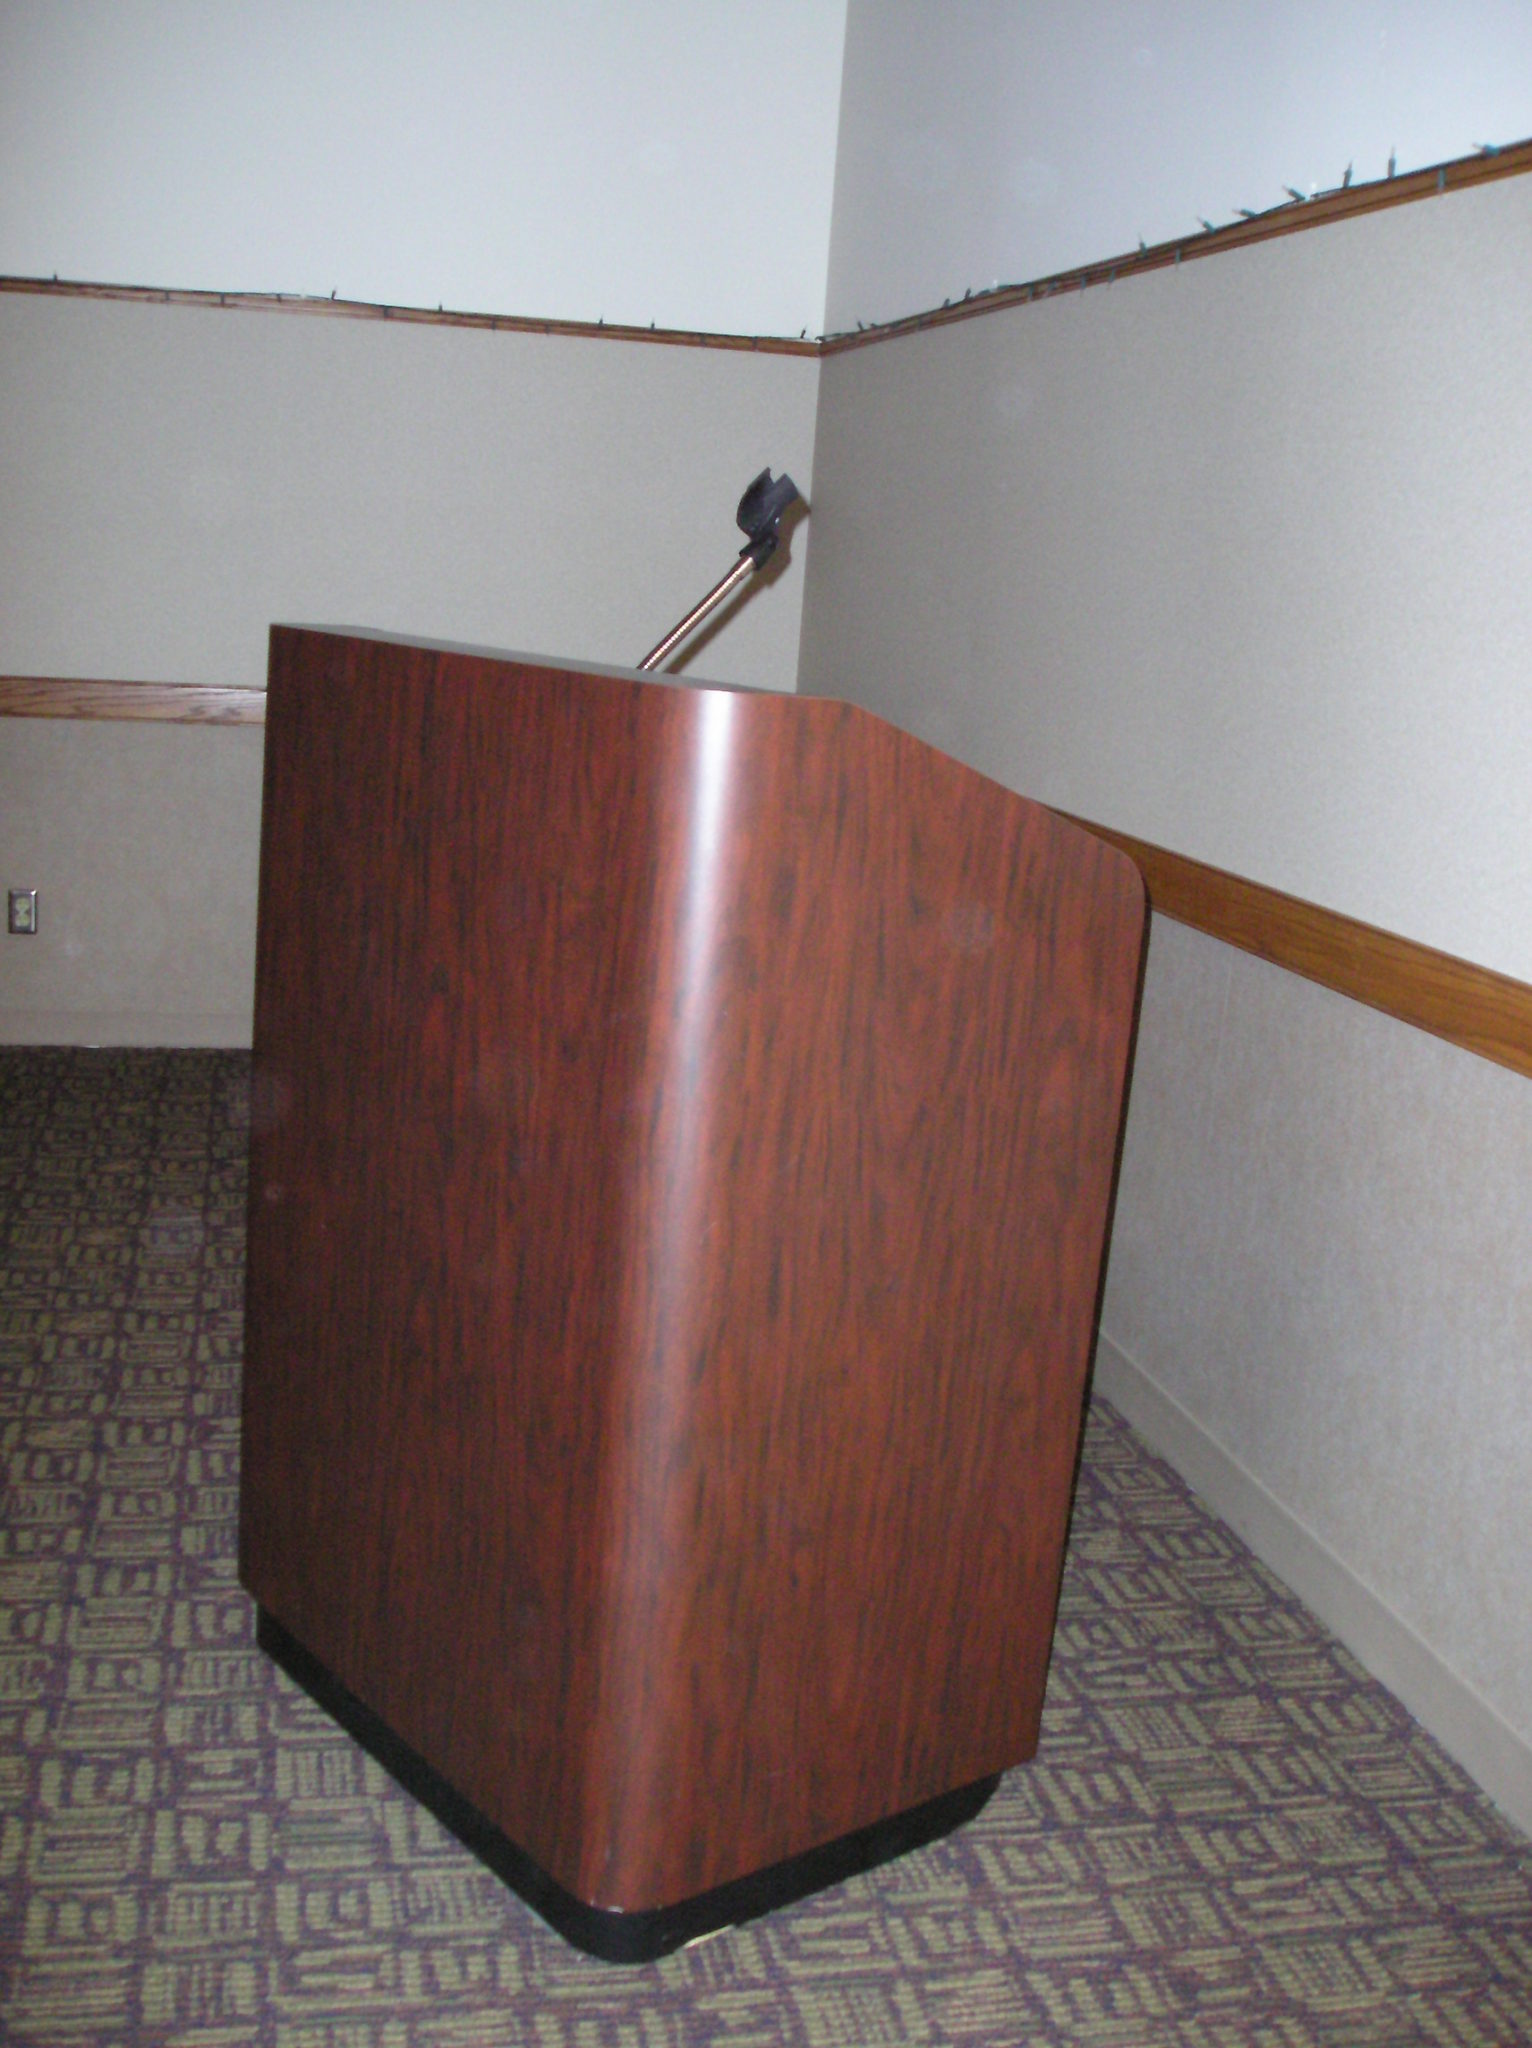 podium stand